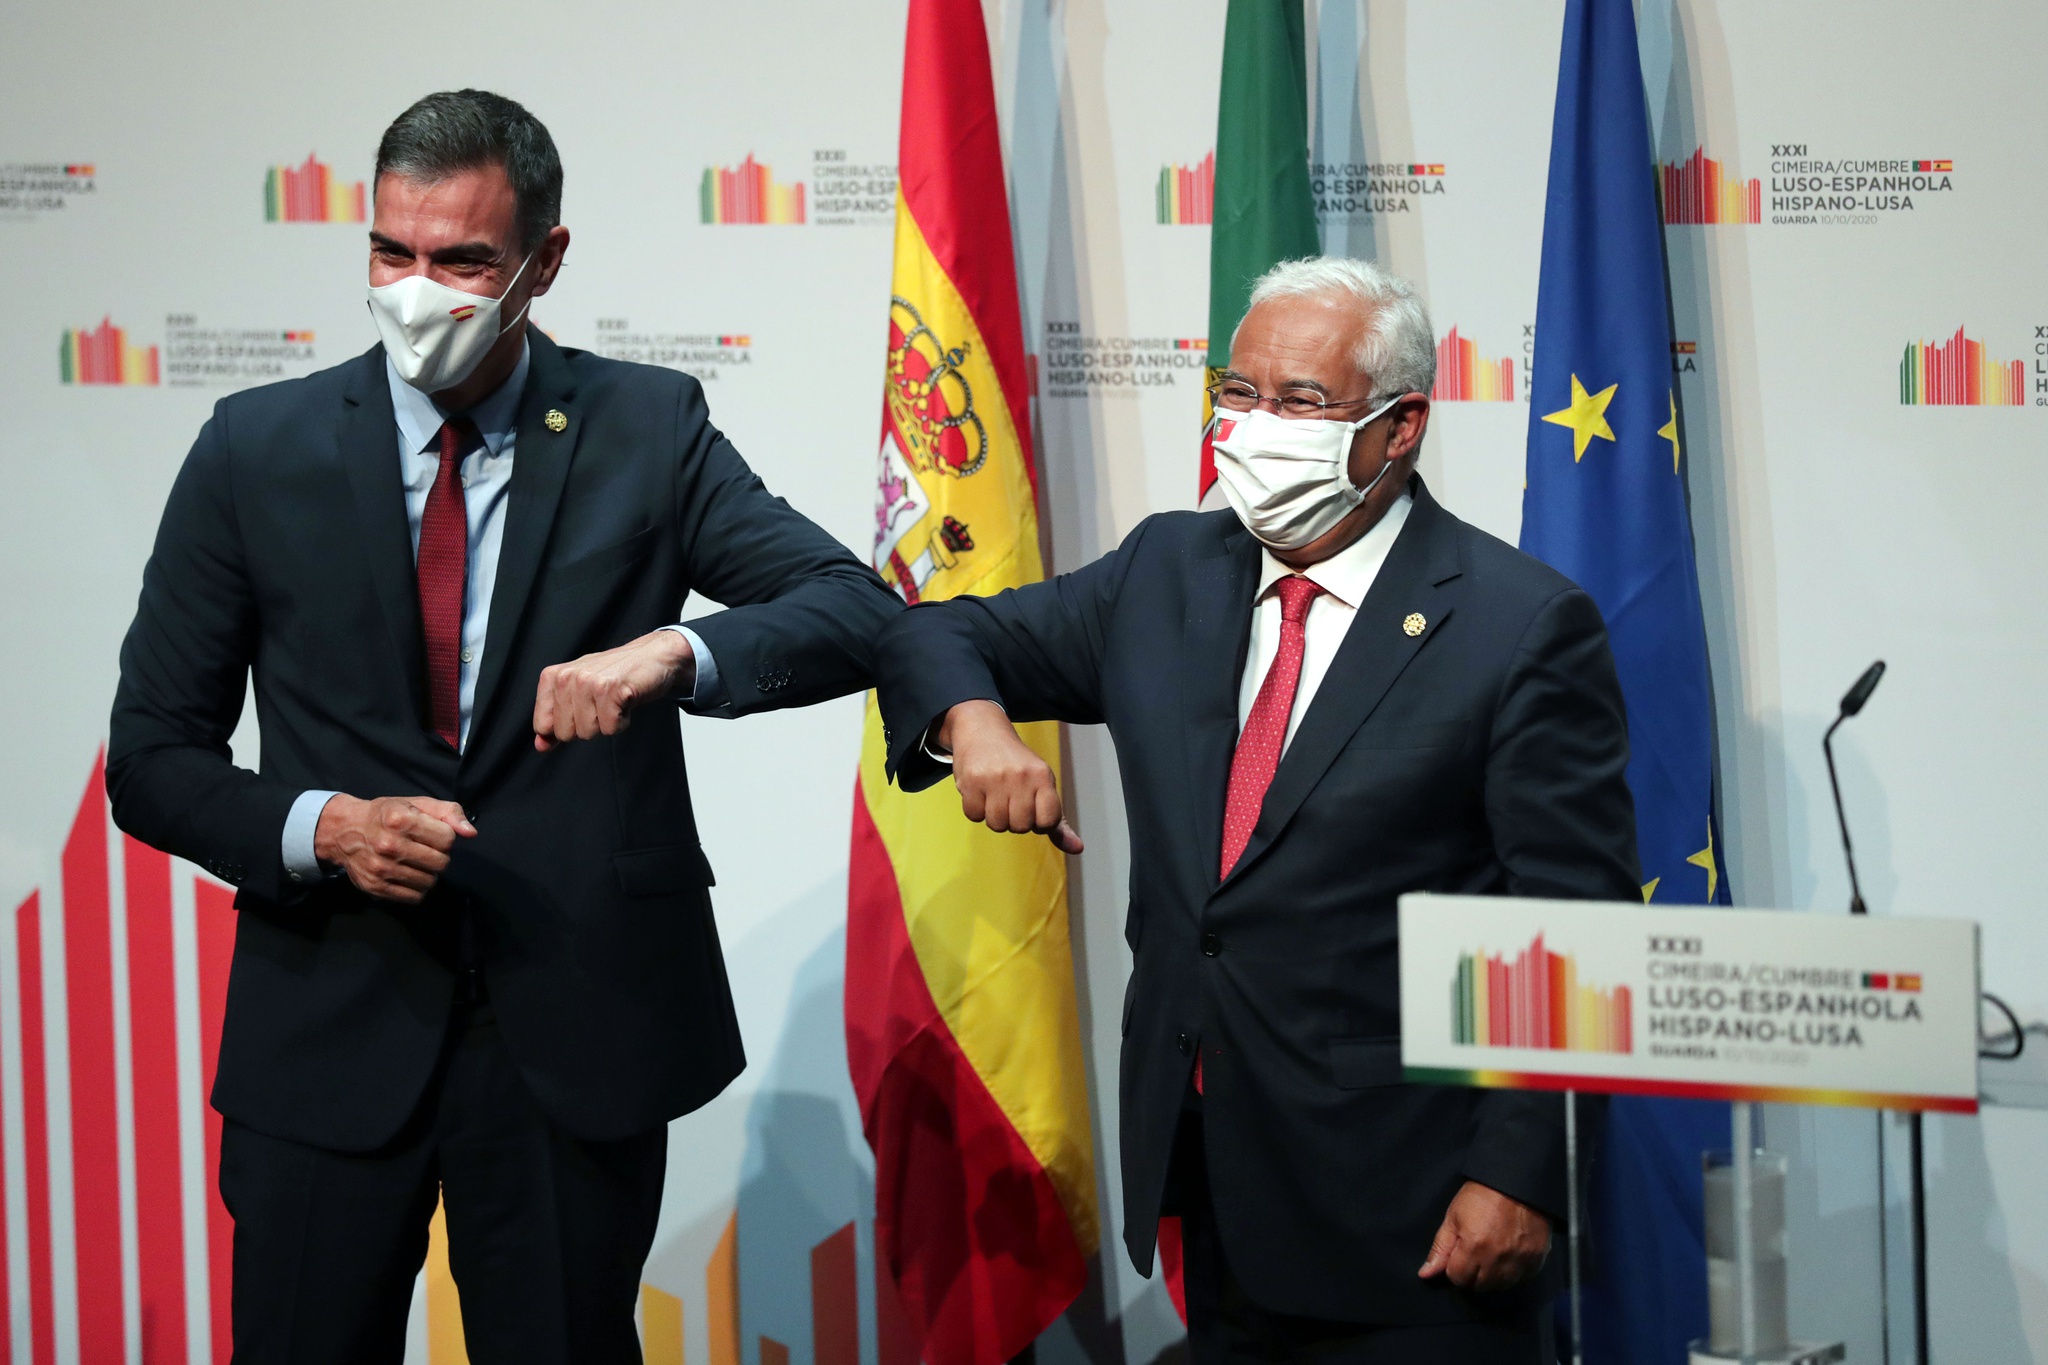 presidentes do governo espanhol e português durante a cimeira ibérica deste ano.